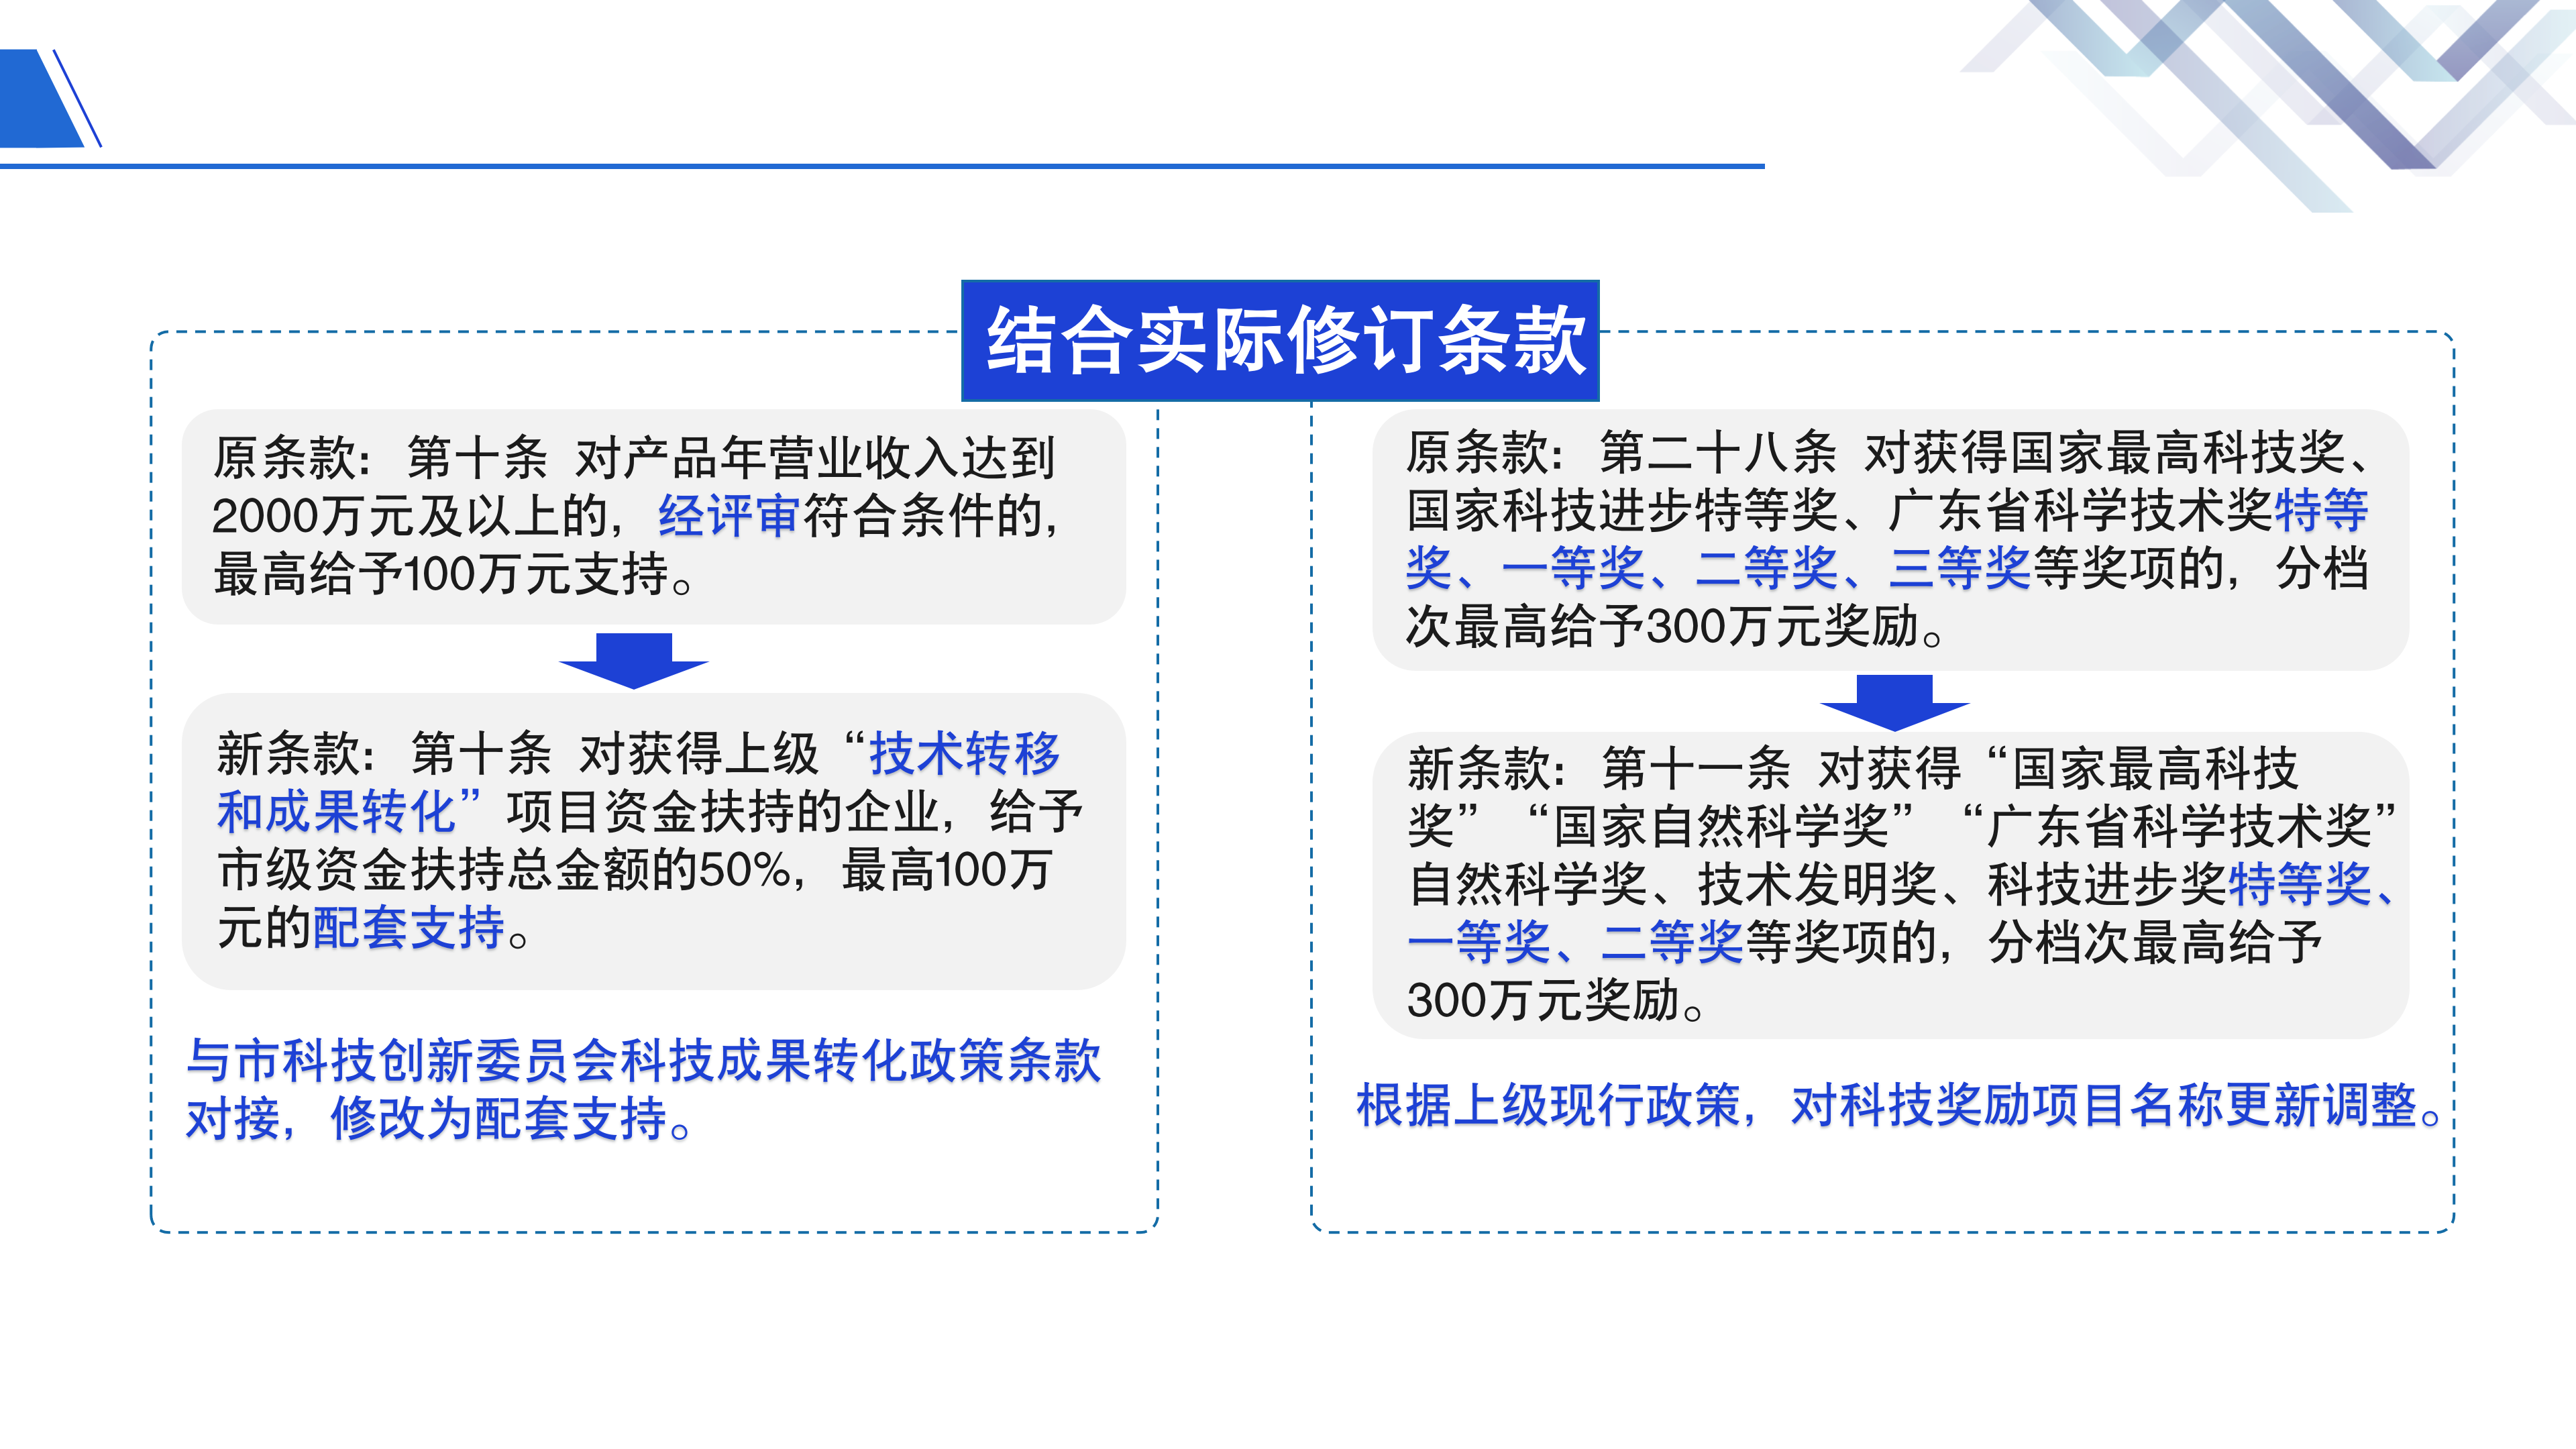 《深圳市大鹏新区关于加强科技研发促进技术创新的若干措施》政策解读_10.png